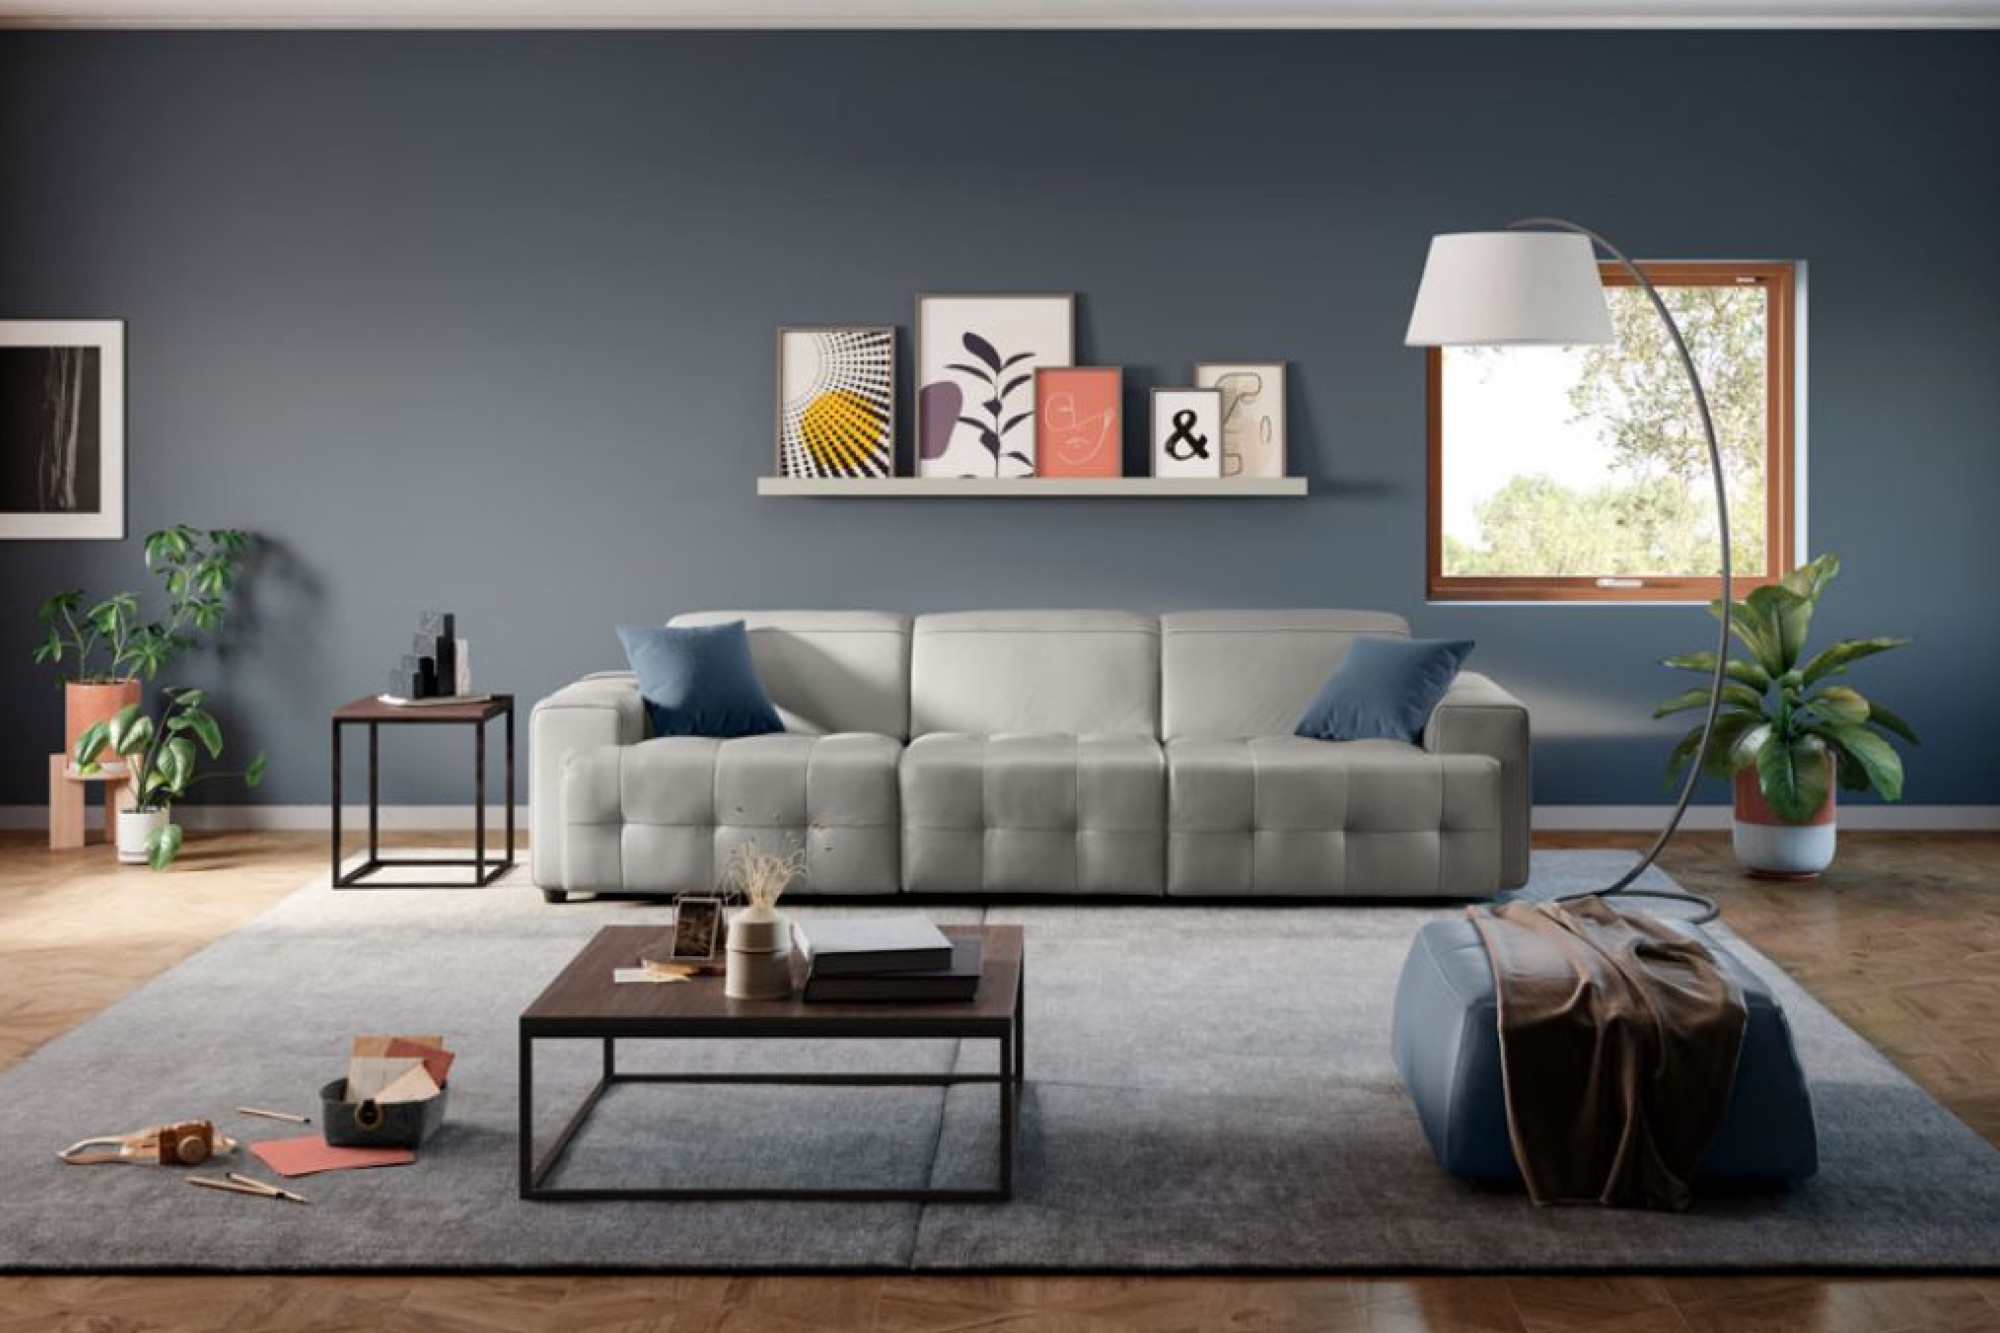 Dash Square introduces exquisite sofa collection